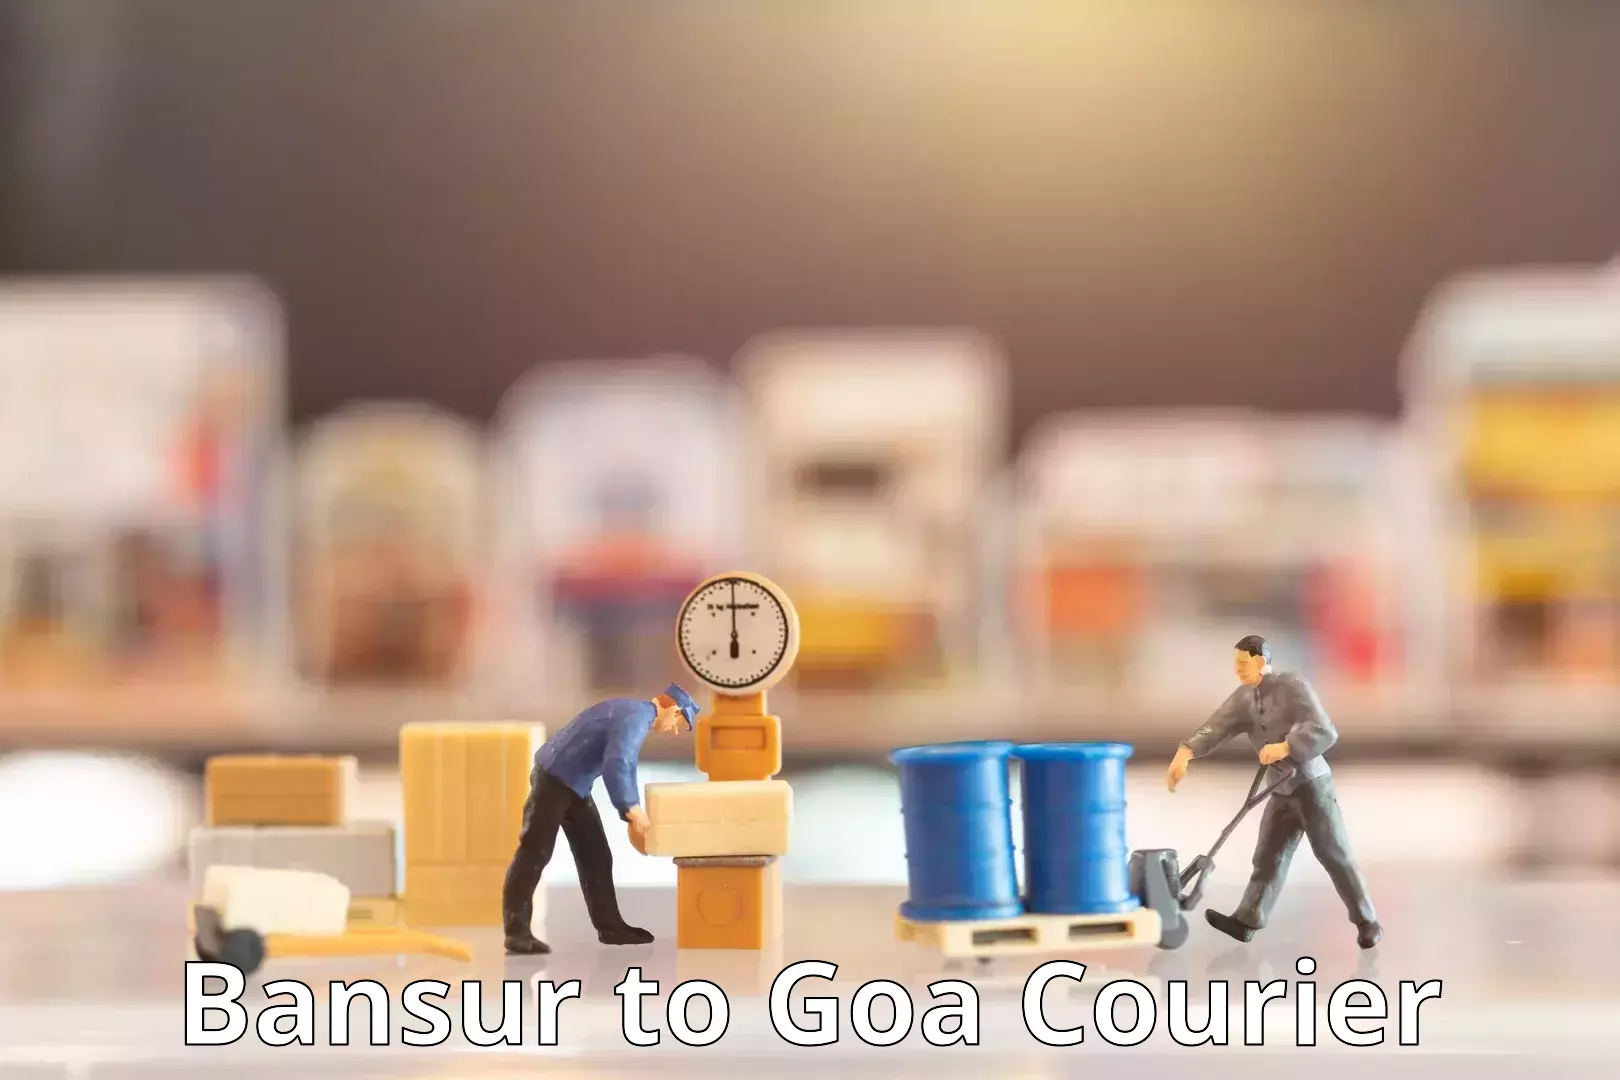 Courier services Bansur to Goa University